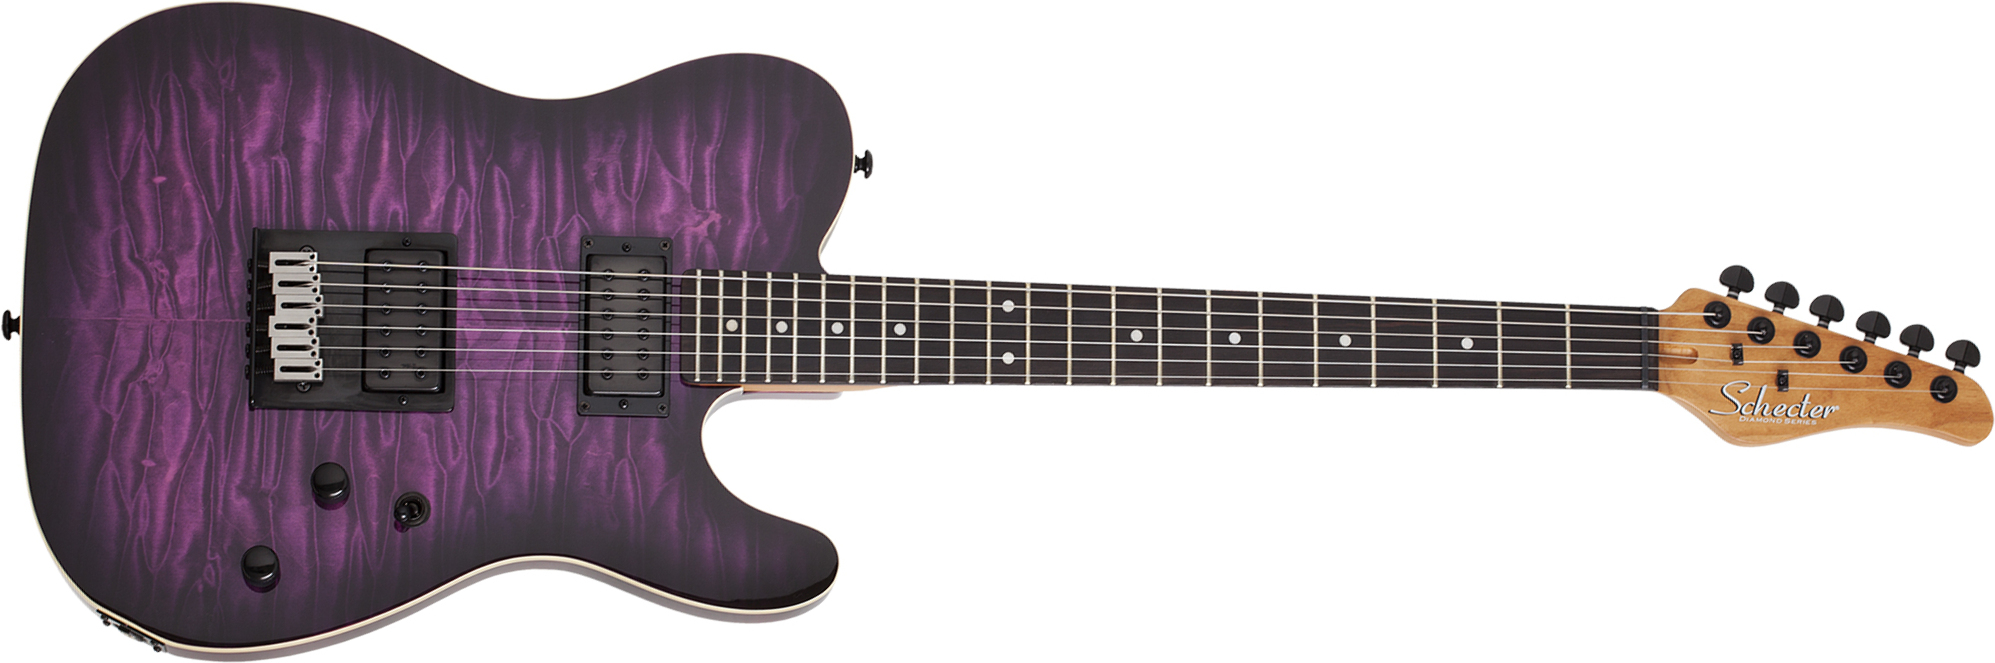 Schecter Pt Pro 2h Ht Eb - Trans Purple Burst - Guitarra eléctrica con forma de tel - Main picture